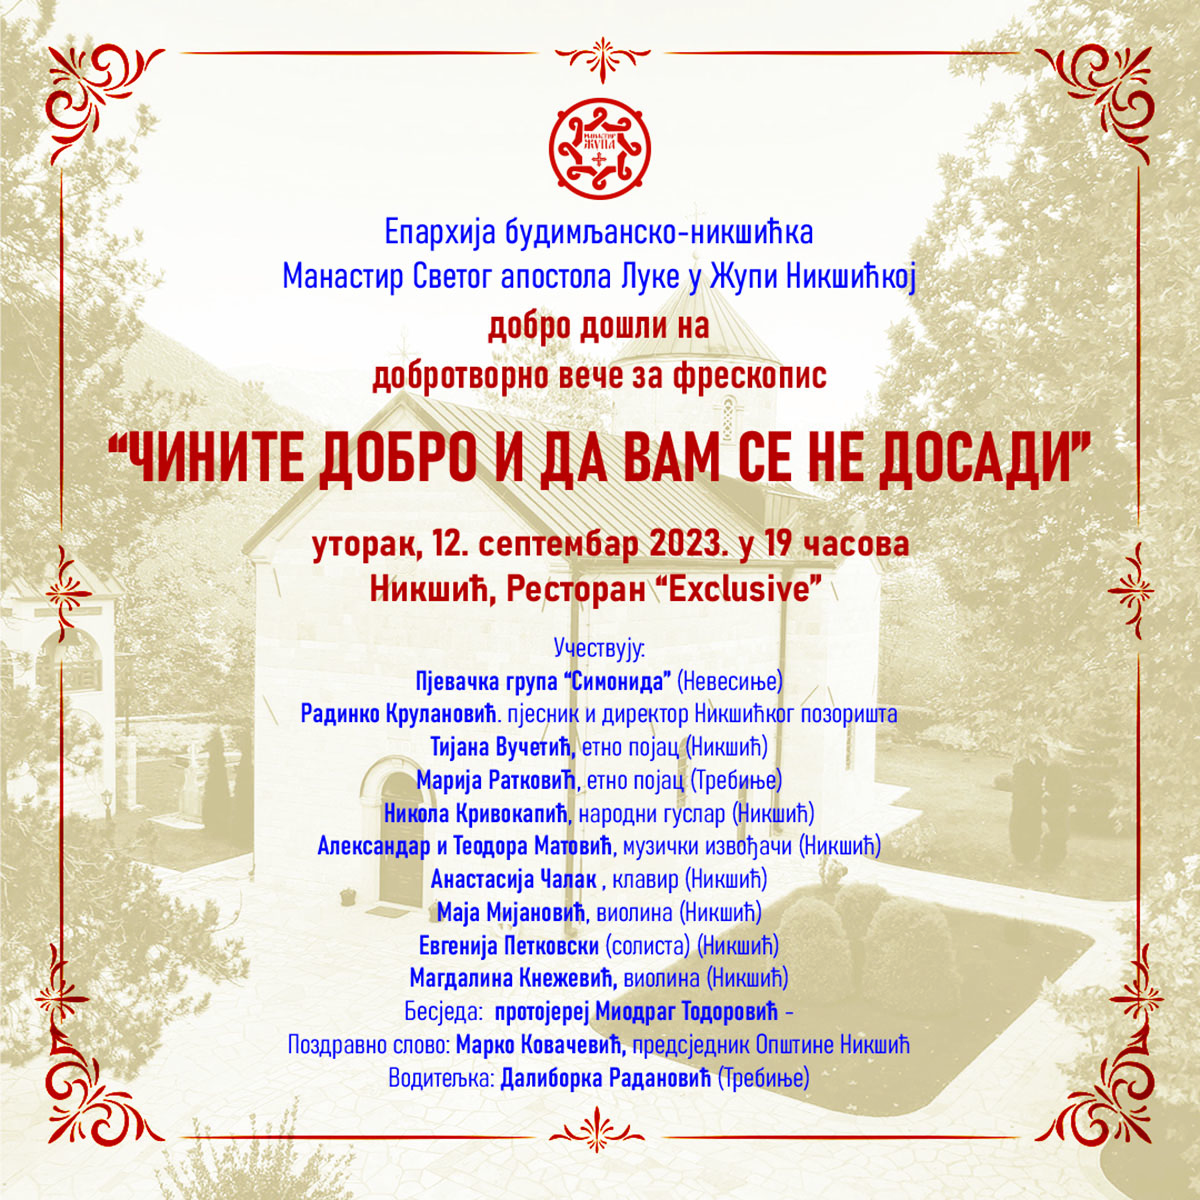 НАЈАВА: Донаторско вече за Жупски манастир у Никшићу